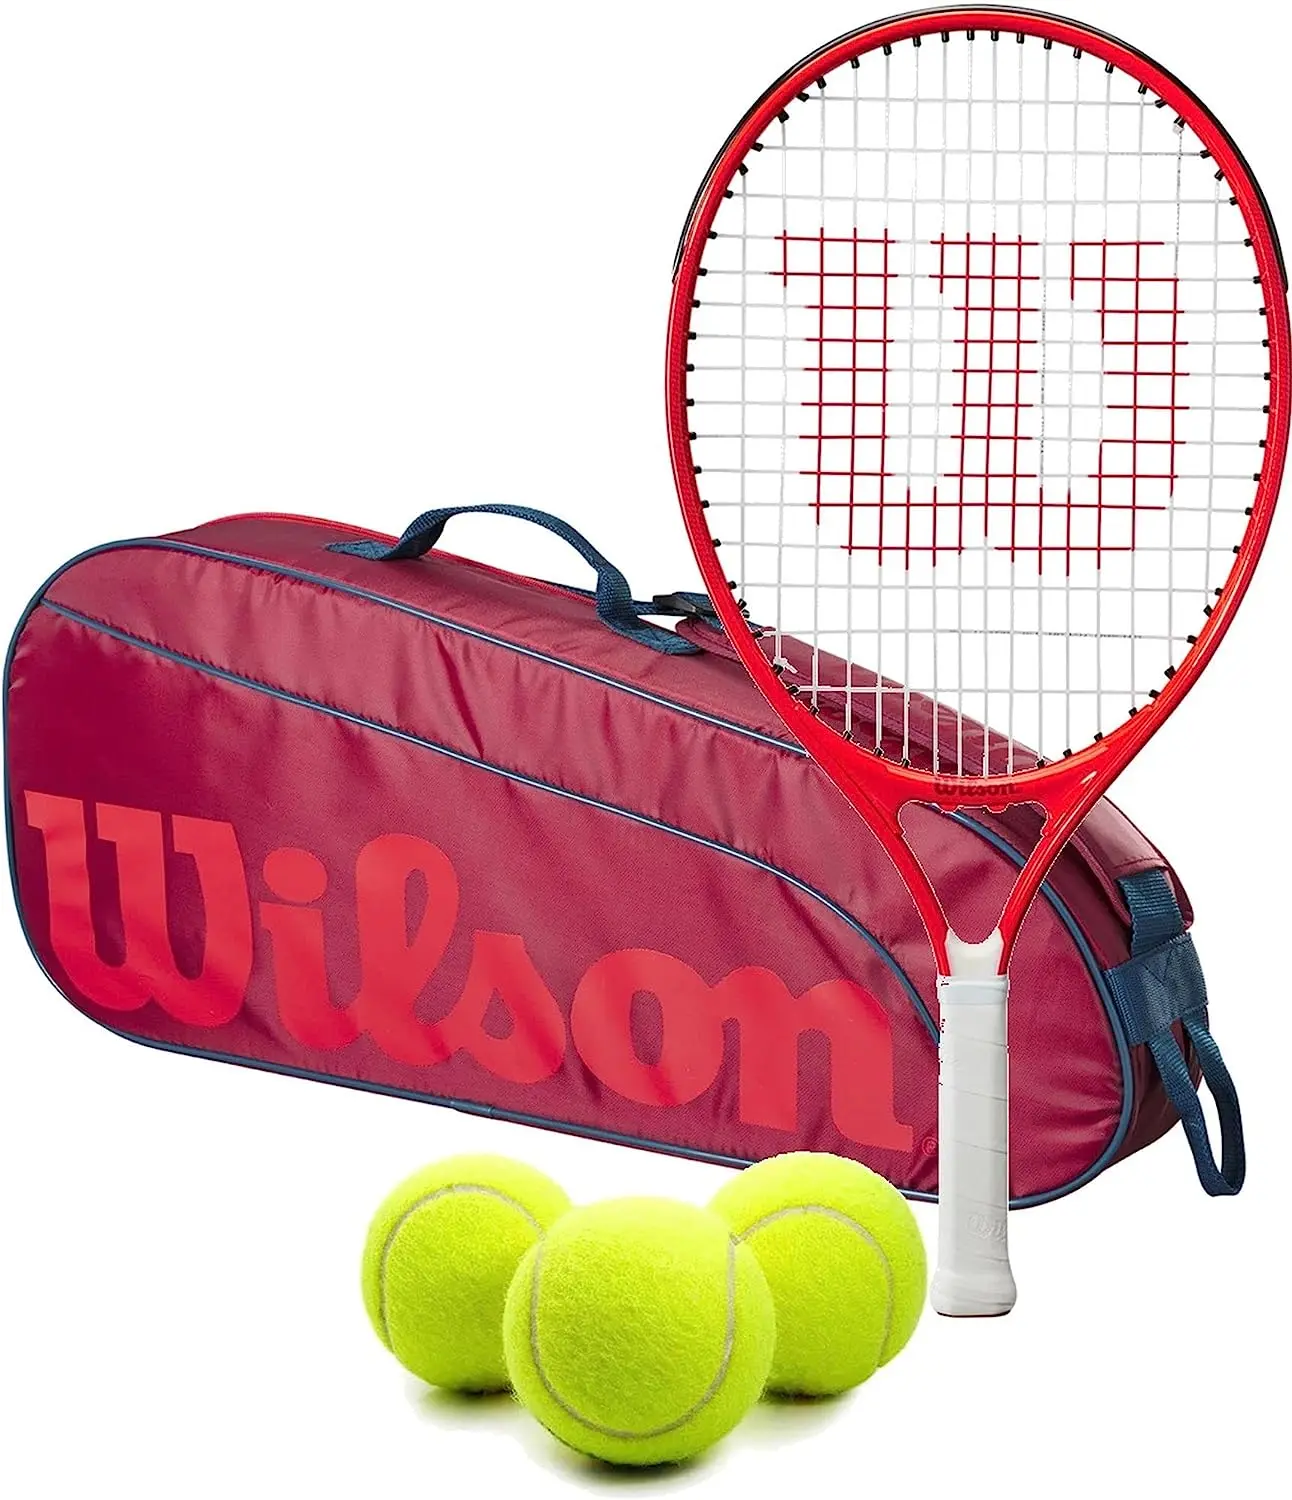 Wilson Roger Federer Junior Tennis Racquet + 3pk Bag with 3 Tennis Balls (Red/Infrared)